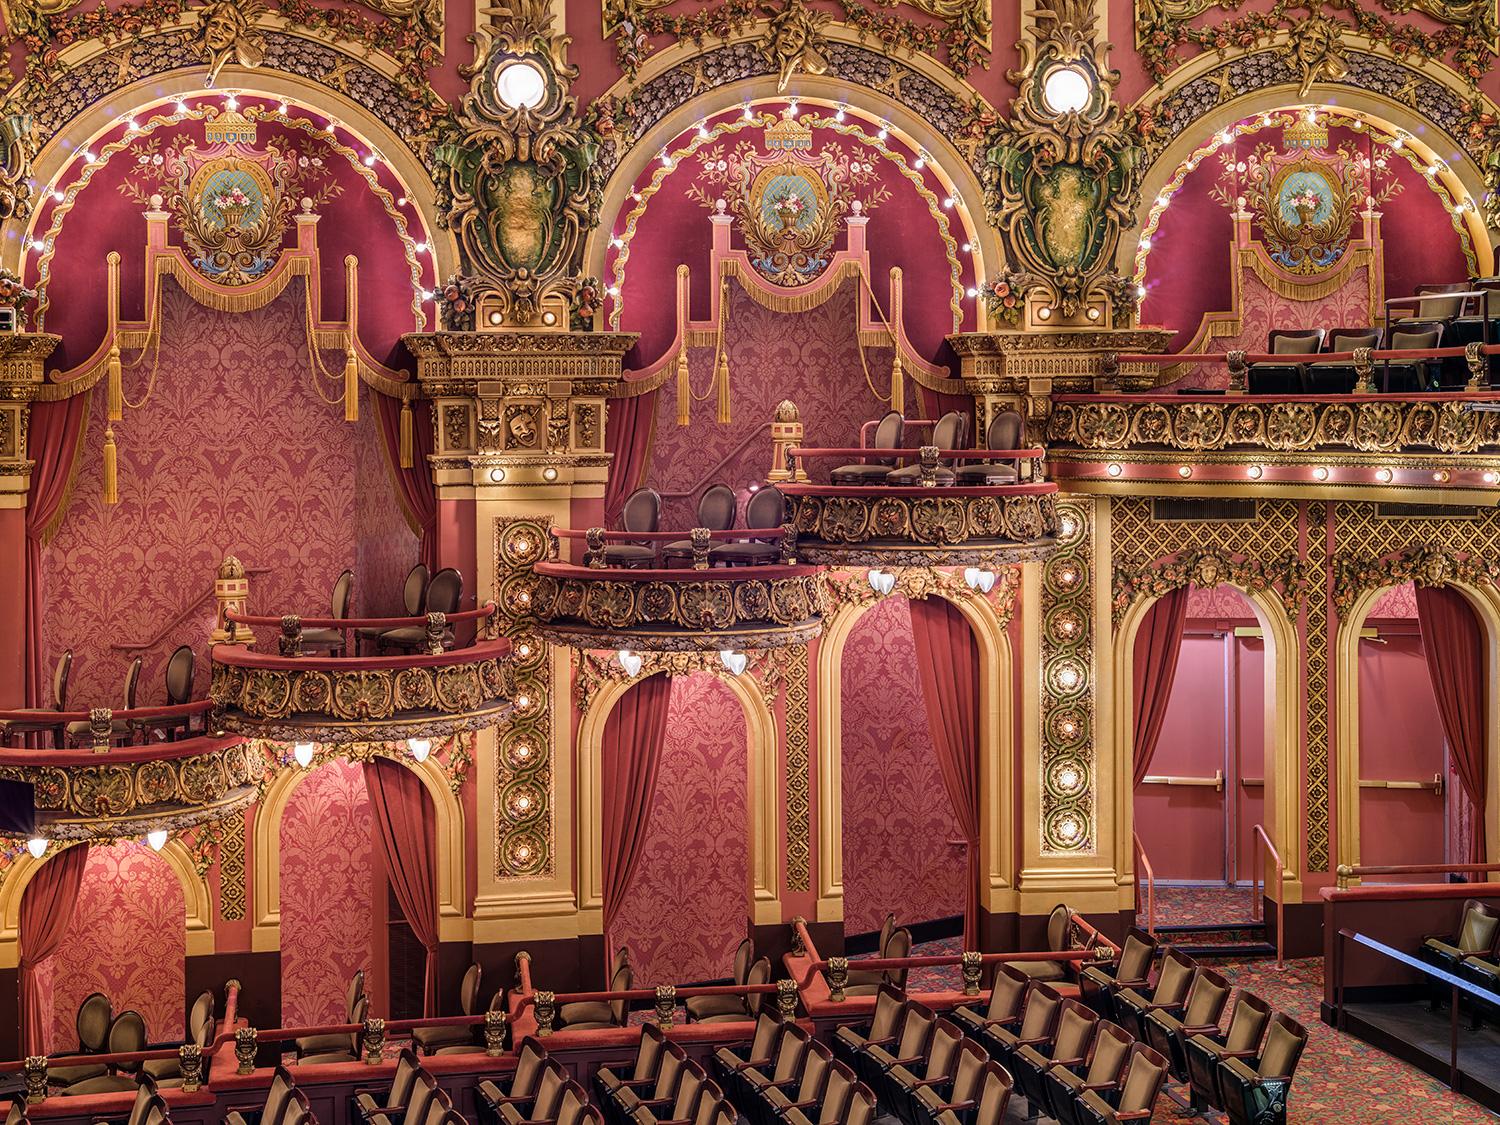 Das Cutler Majestic Theatre ist ein 1903 vom Architekten John Galen Howard erbautes, mit Juwelen verziertes Beaux-Arts-Opernhaus und späteres Varieté-Theater.

Serie: Architektur der vergoldeten Träume
Archiv-Pigment Canson Platine Druck	
Alle